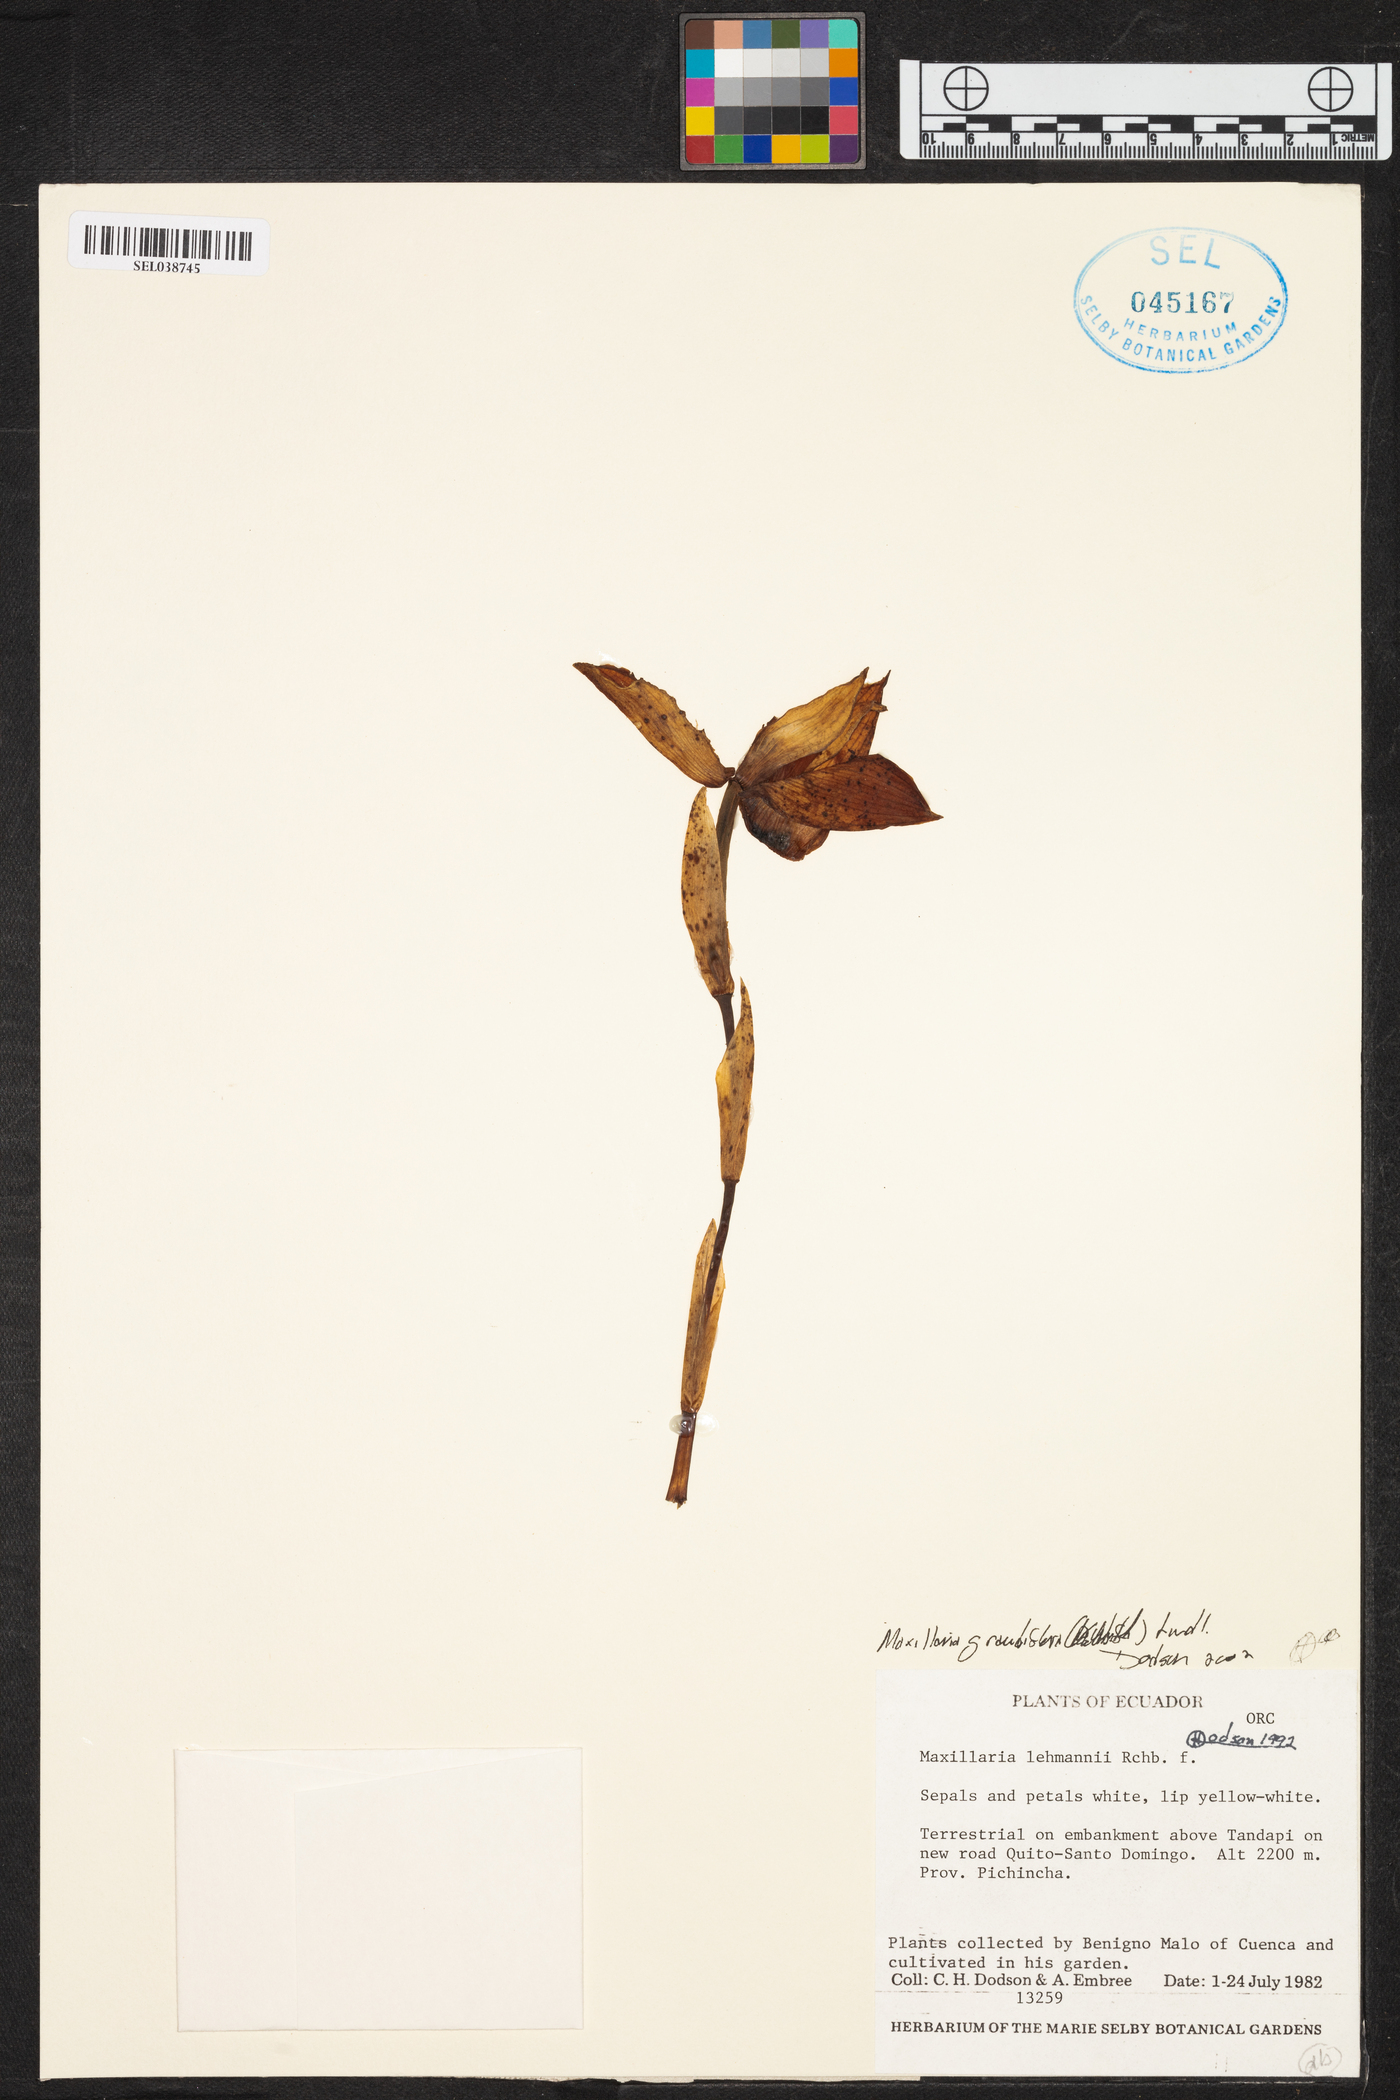 Maxillaria grandiflora image